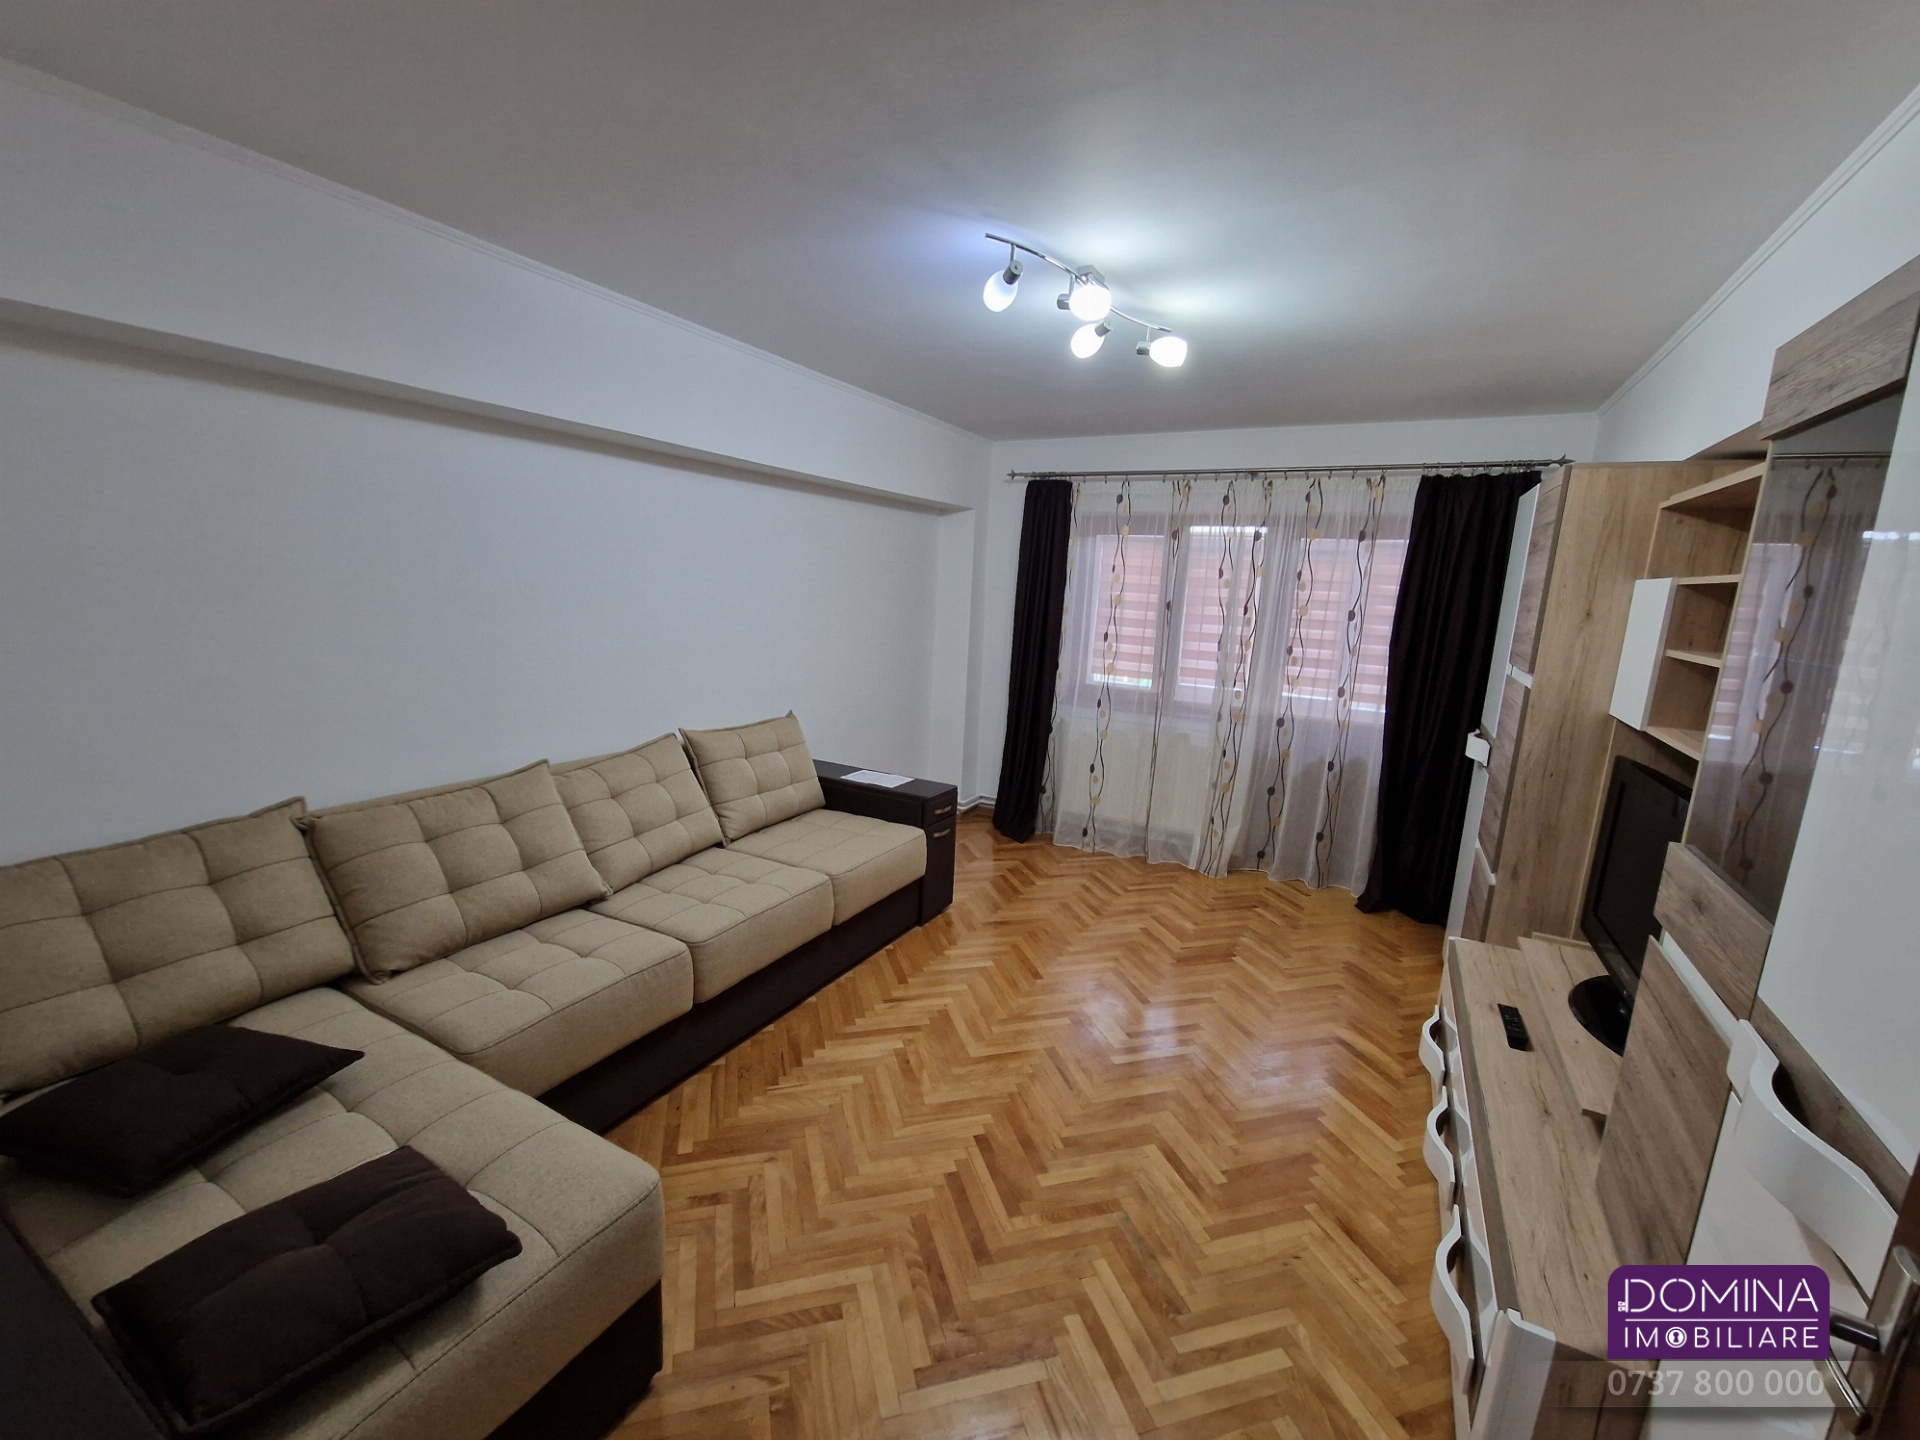 Vânzare apartament 2 camere  * zonă centrală * vis-a-vis de Tribunal* strada Traian